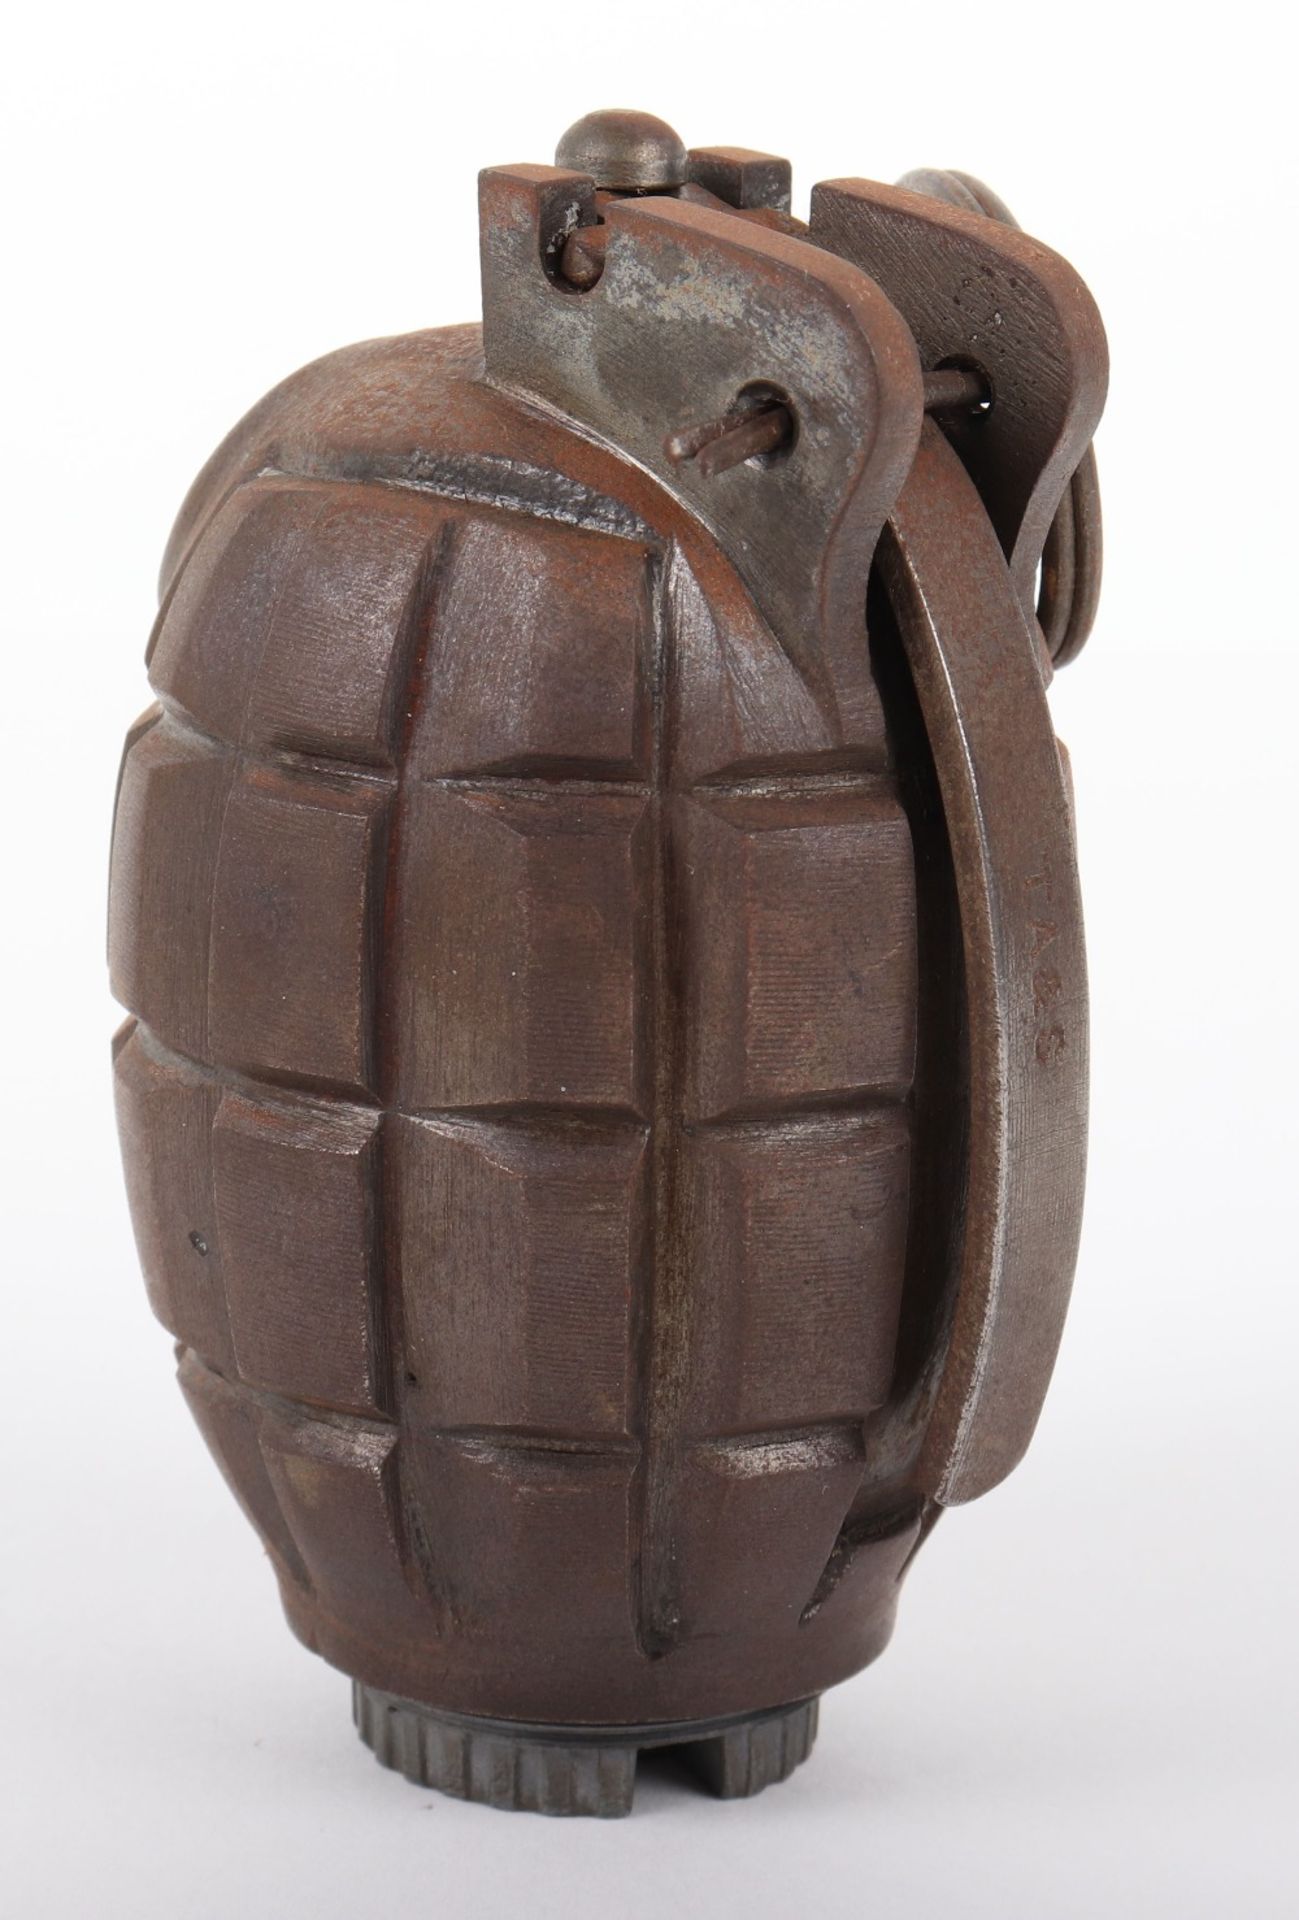 Inert British Mills Grenade - Image 2 of 4